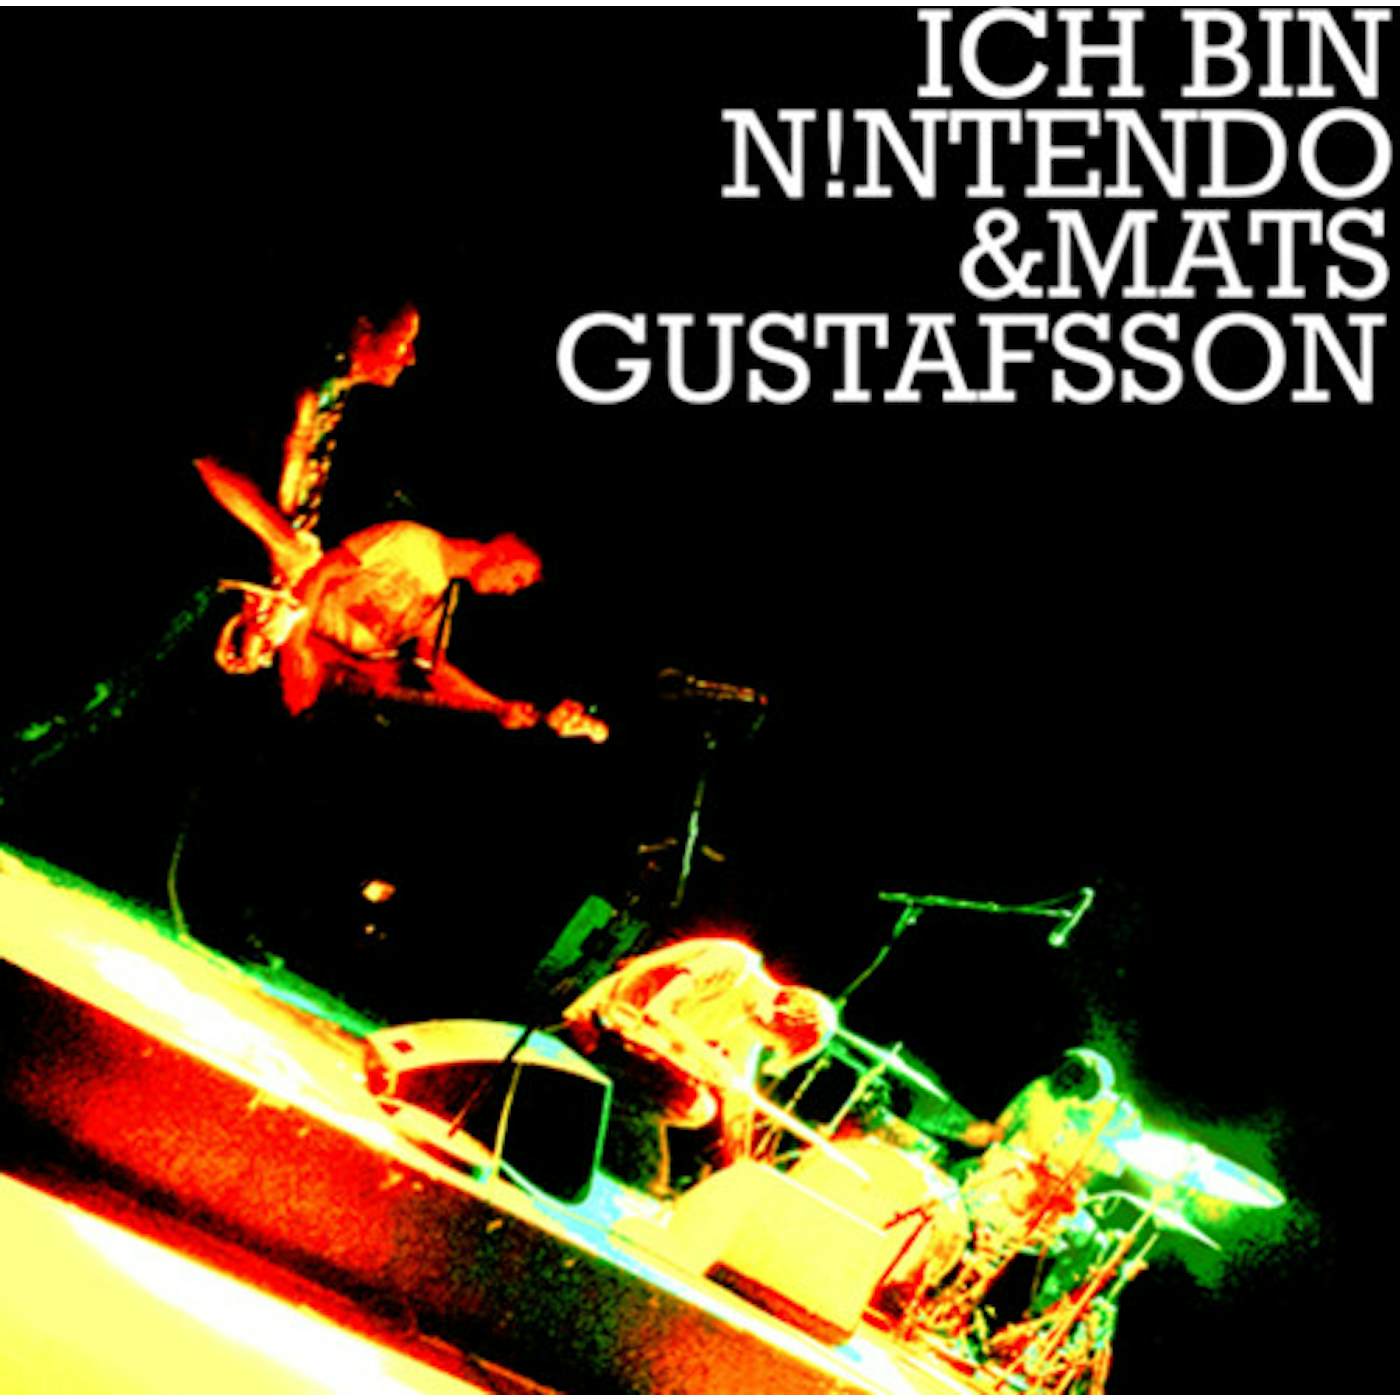 Mats Ich Bin Nintendo / Gustafsson ICH BIN NINTENDO & MATS GUSTAFSSON Vinyl Record